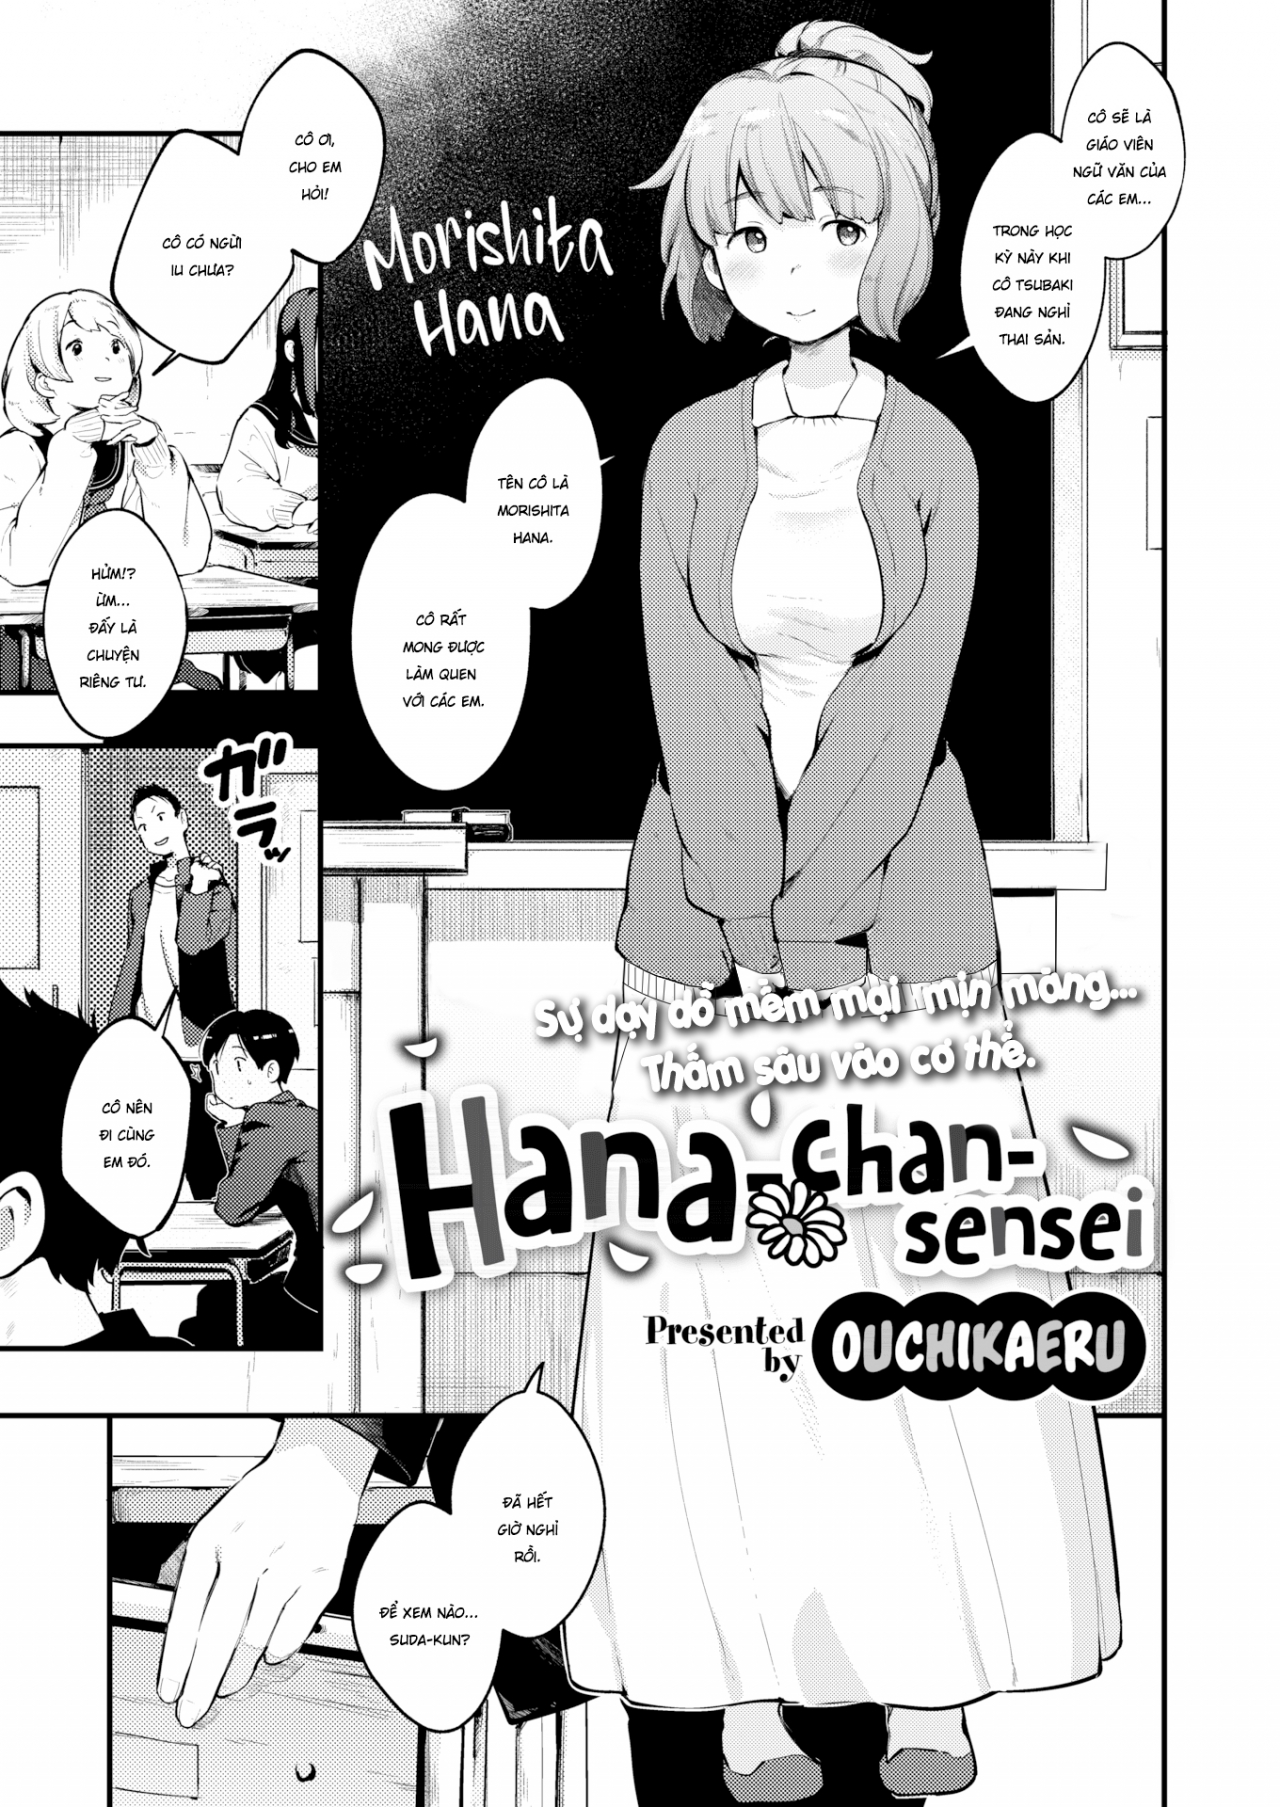 Bài giảng ngọt ngào của Hana-chan sensei.